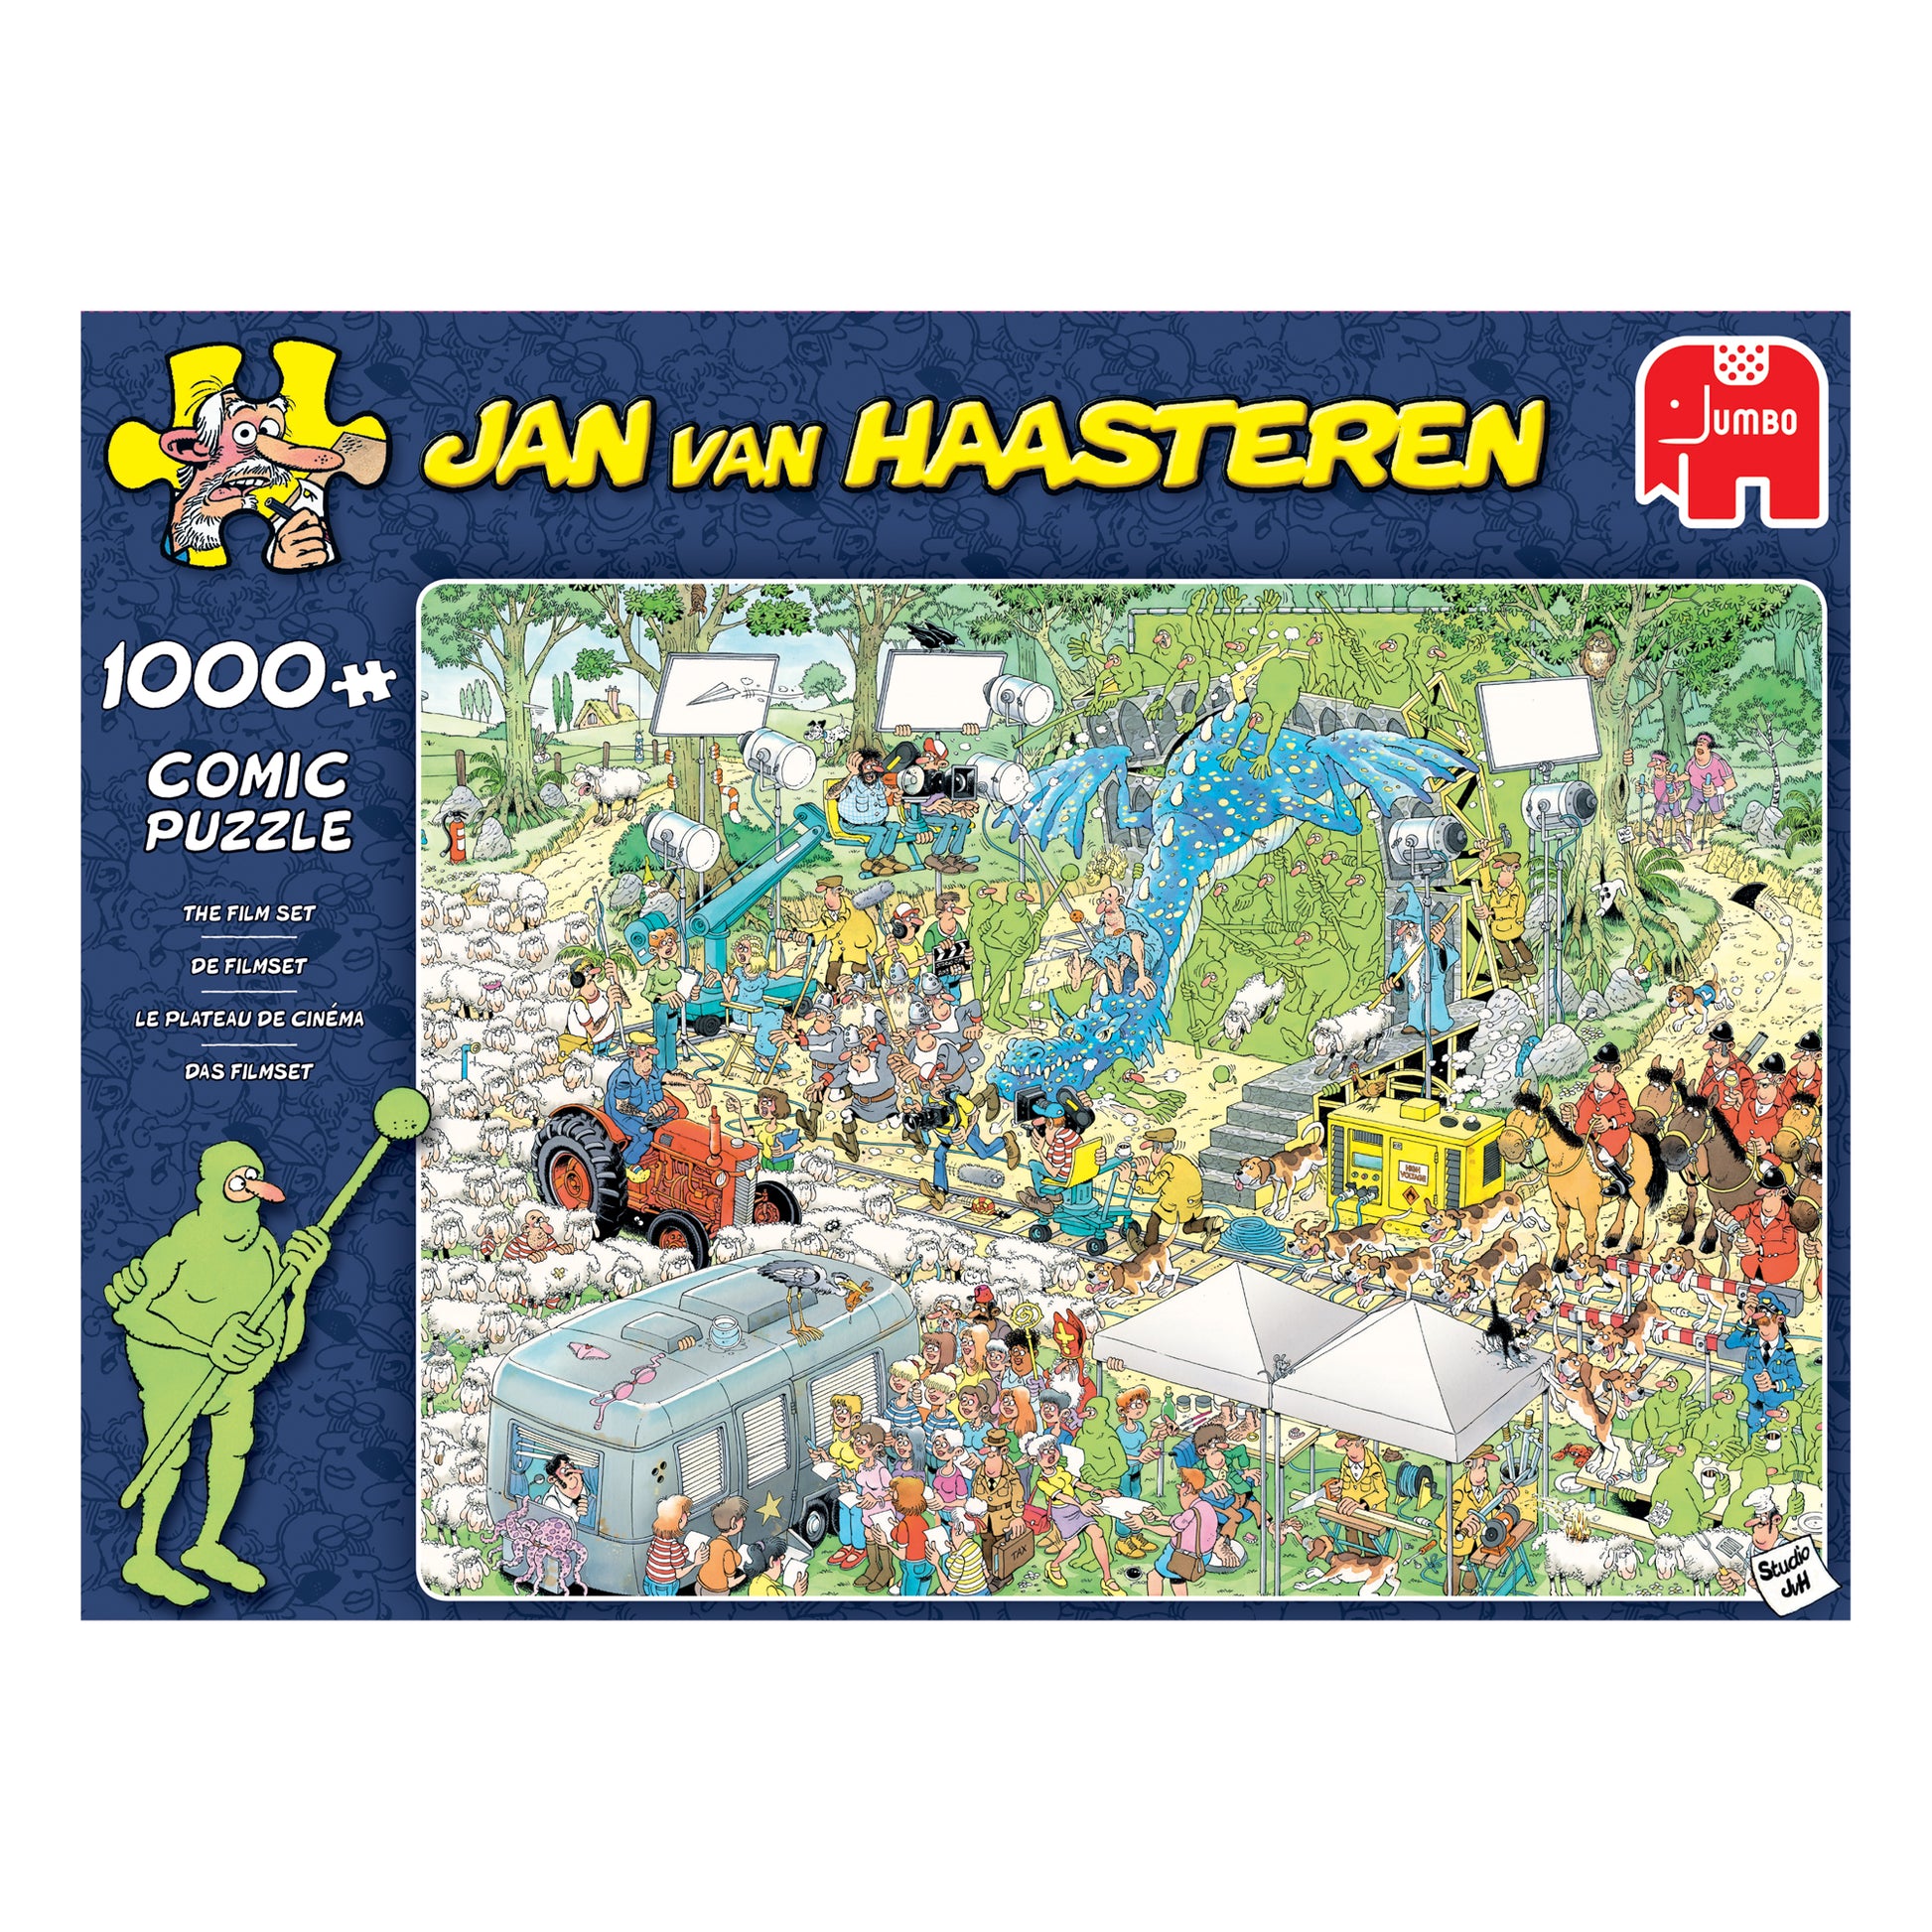 Jan van Haasteren - The Film Set (1000 pieces) - product image - Jumboplay.com